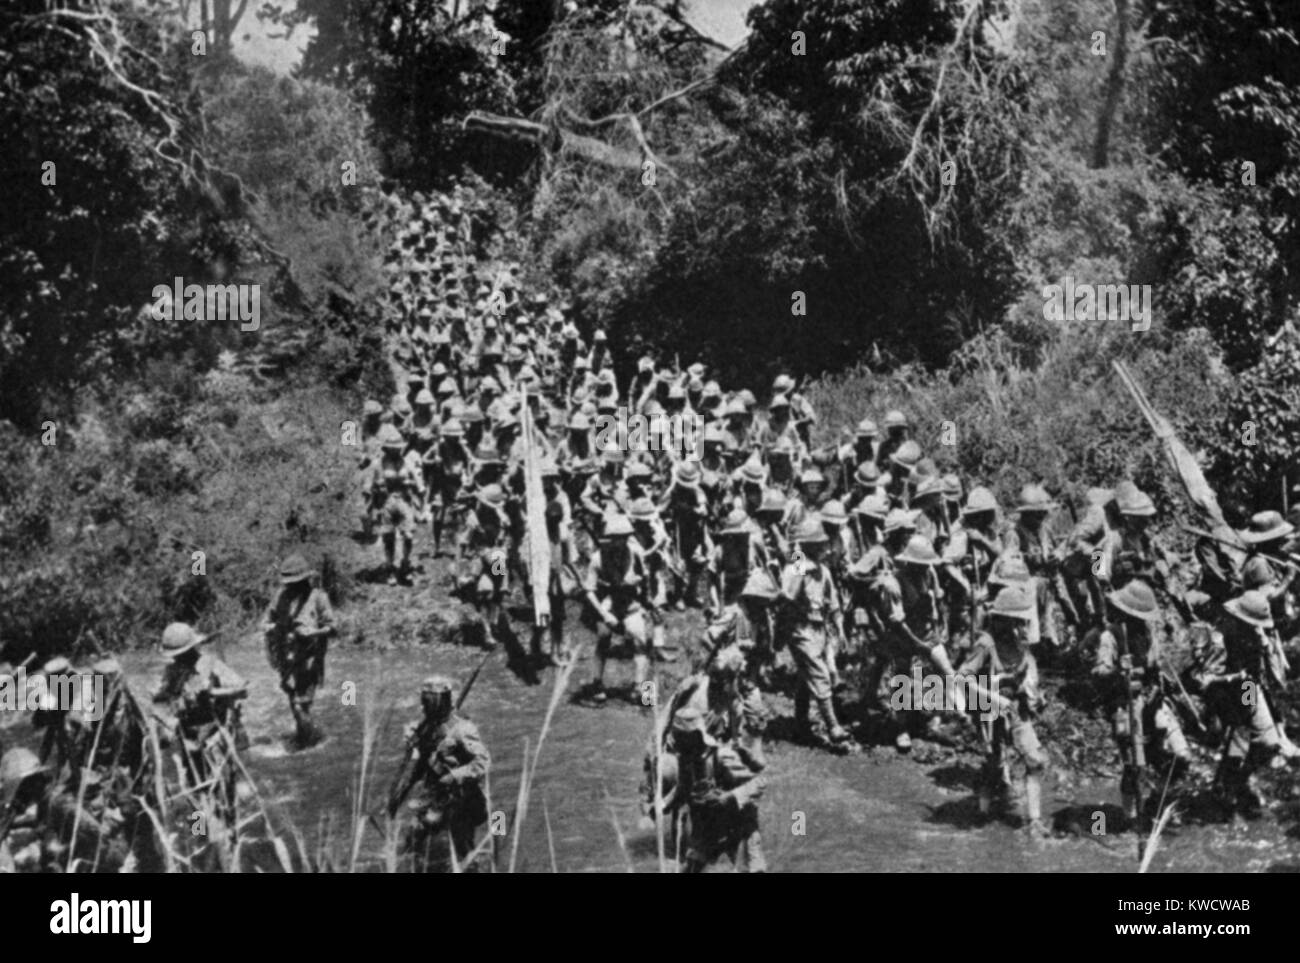 La primera guerra mundial en África. Las tropas africanas británicas sobre la marcha al Kilimanjaro. La operación comenzó el 25 de febrero de 1916 y terminó el 22 de marzo de 1916, cuando los británicos tomaron posesión de la montaña de las fuerzas coloniales alemanes. (BSLOC 2013 1 44) Foto de stock